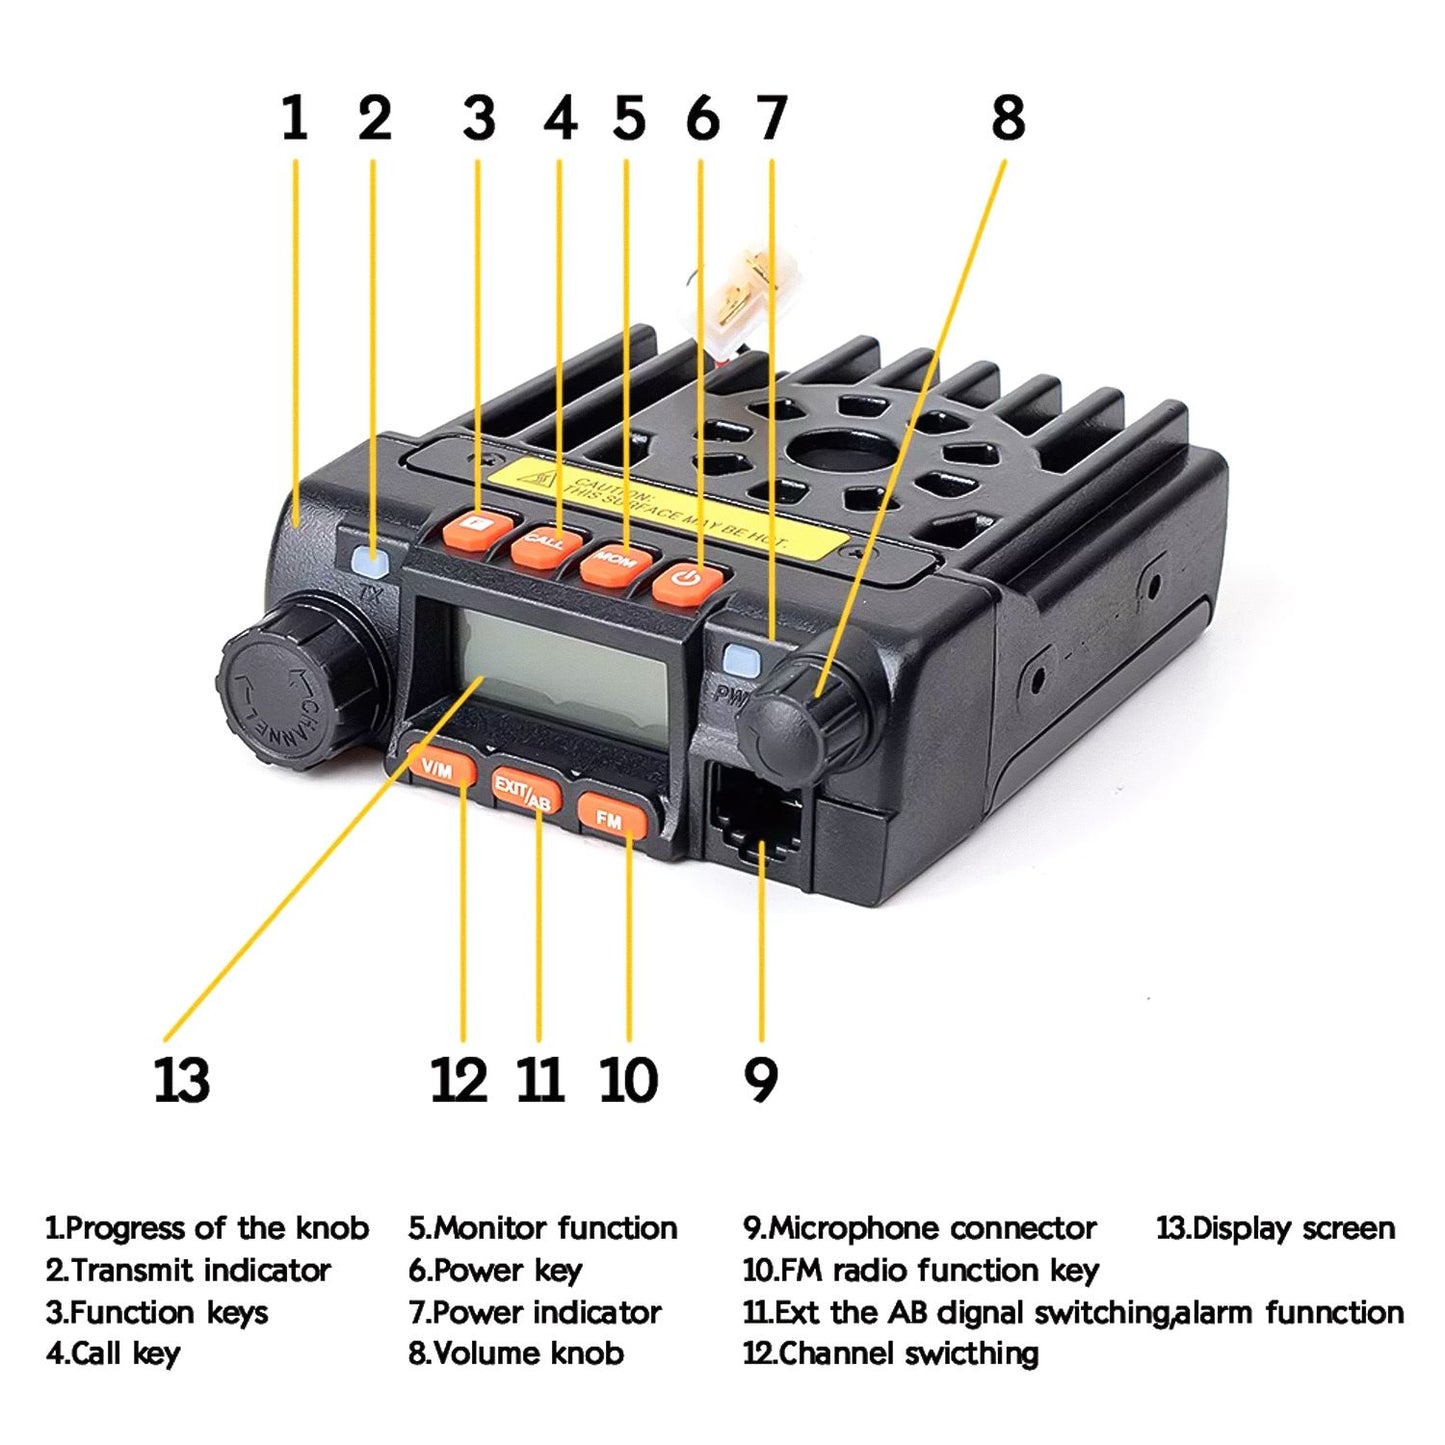 Juentai JT-6188 Mini Ricetrasmettitore veicolare dual-band, microfono con tastiera, 200 canali di memoria, display a colori personalizzabile